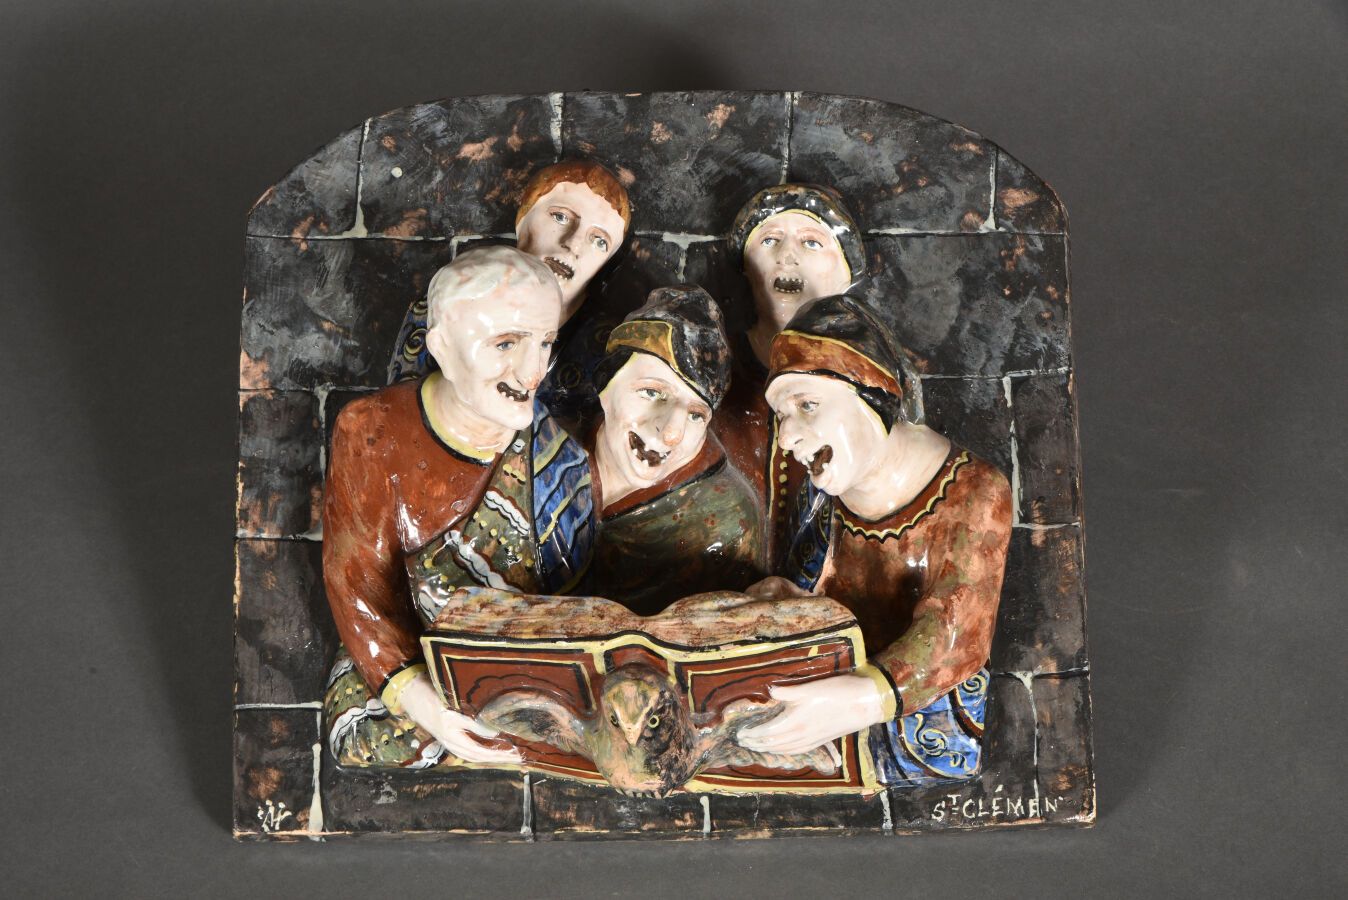 Null 多色陶器浮雕 "Les chantres "表现了五个人物，他们张着嘴咨询一本音乐书。右下方刻有 "St Clémen "字样，左侧有字母图案。

1&hellip;